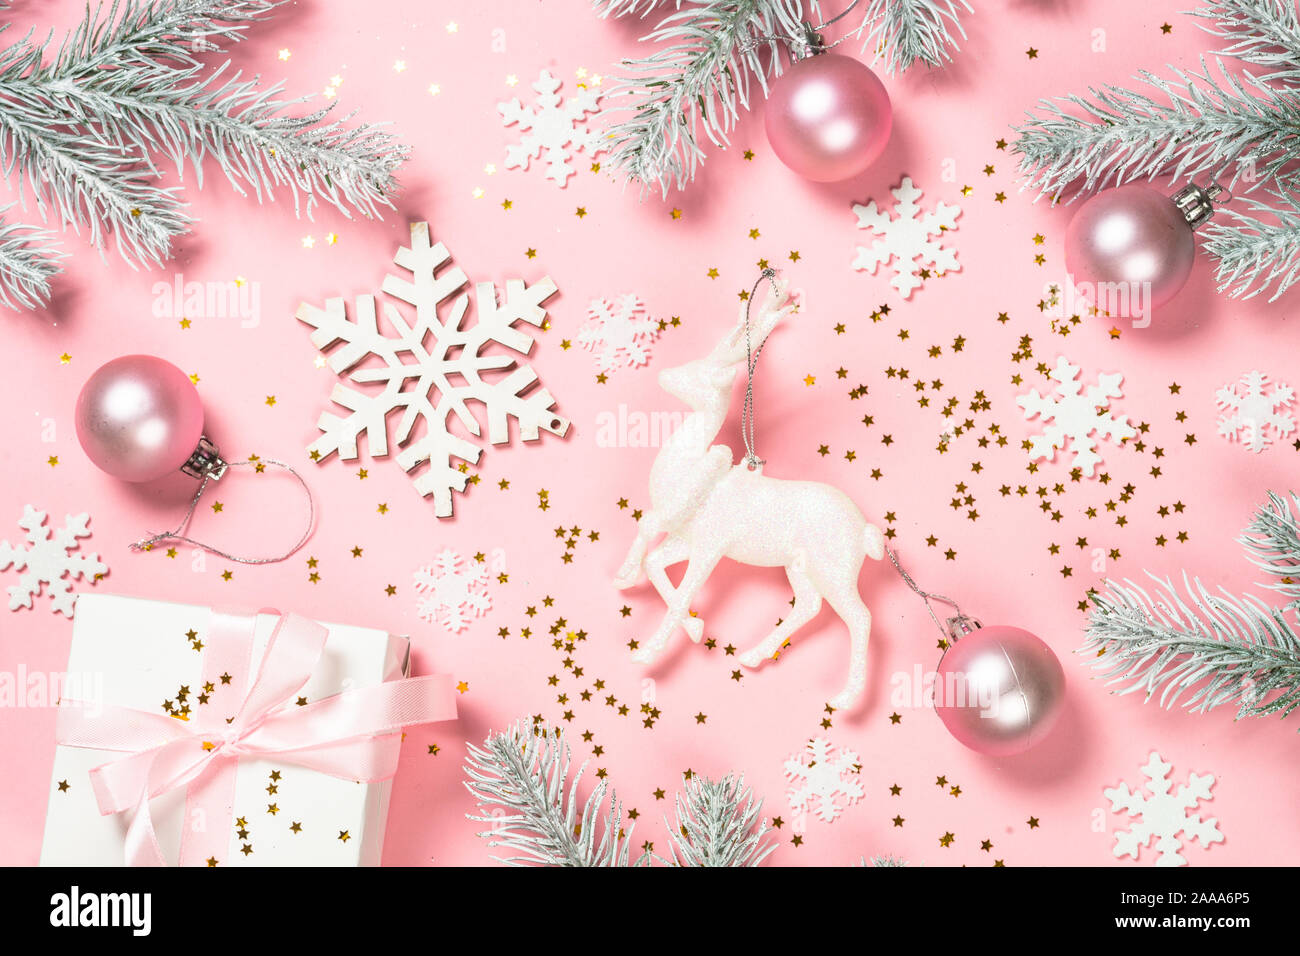 Bức hình nền phẳng màu hồng Giáng Sinh sẽ là sự lựa chọn hoàn hảo cho những ai yêu thích sự đơn giản nhưng không kém phần đẹp mắt. Với những đồ vật nhỏ xinh và lấp lánh để làm điểm nhấn, nó sẽ giúp bạn tạo ra những tấm ảnh độc đáo và đẹp mắt hơn bao giờ hết. Click ngay để trải nghiệm!